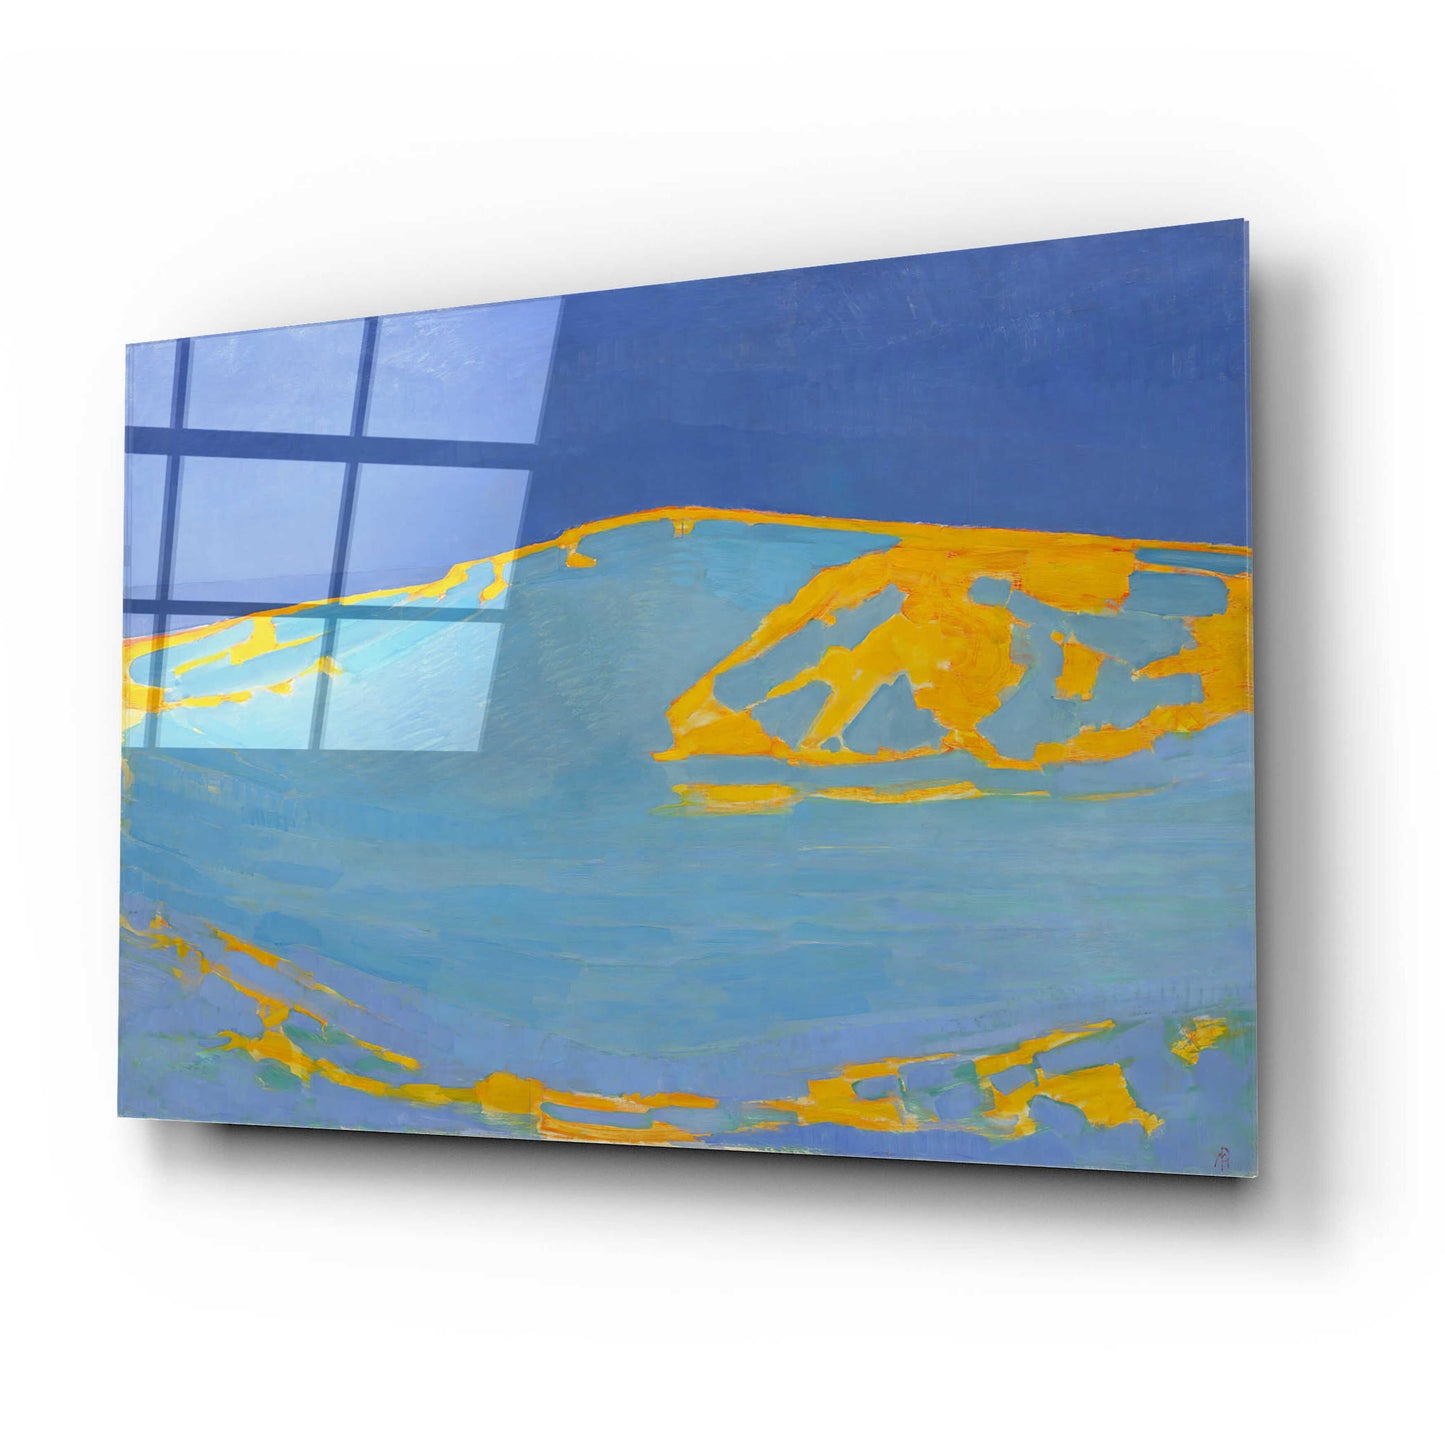 Epic Art 'Summer, Dune in Zeeland, 1910' by Piet Mondrian, Acrylic Glass Wall Art,24x16